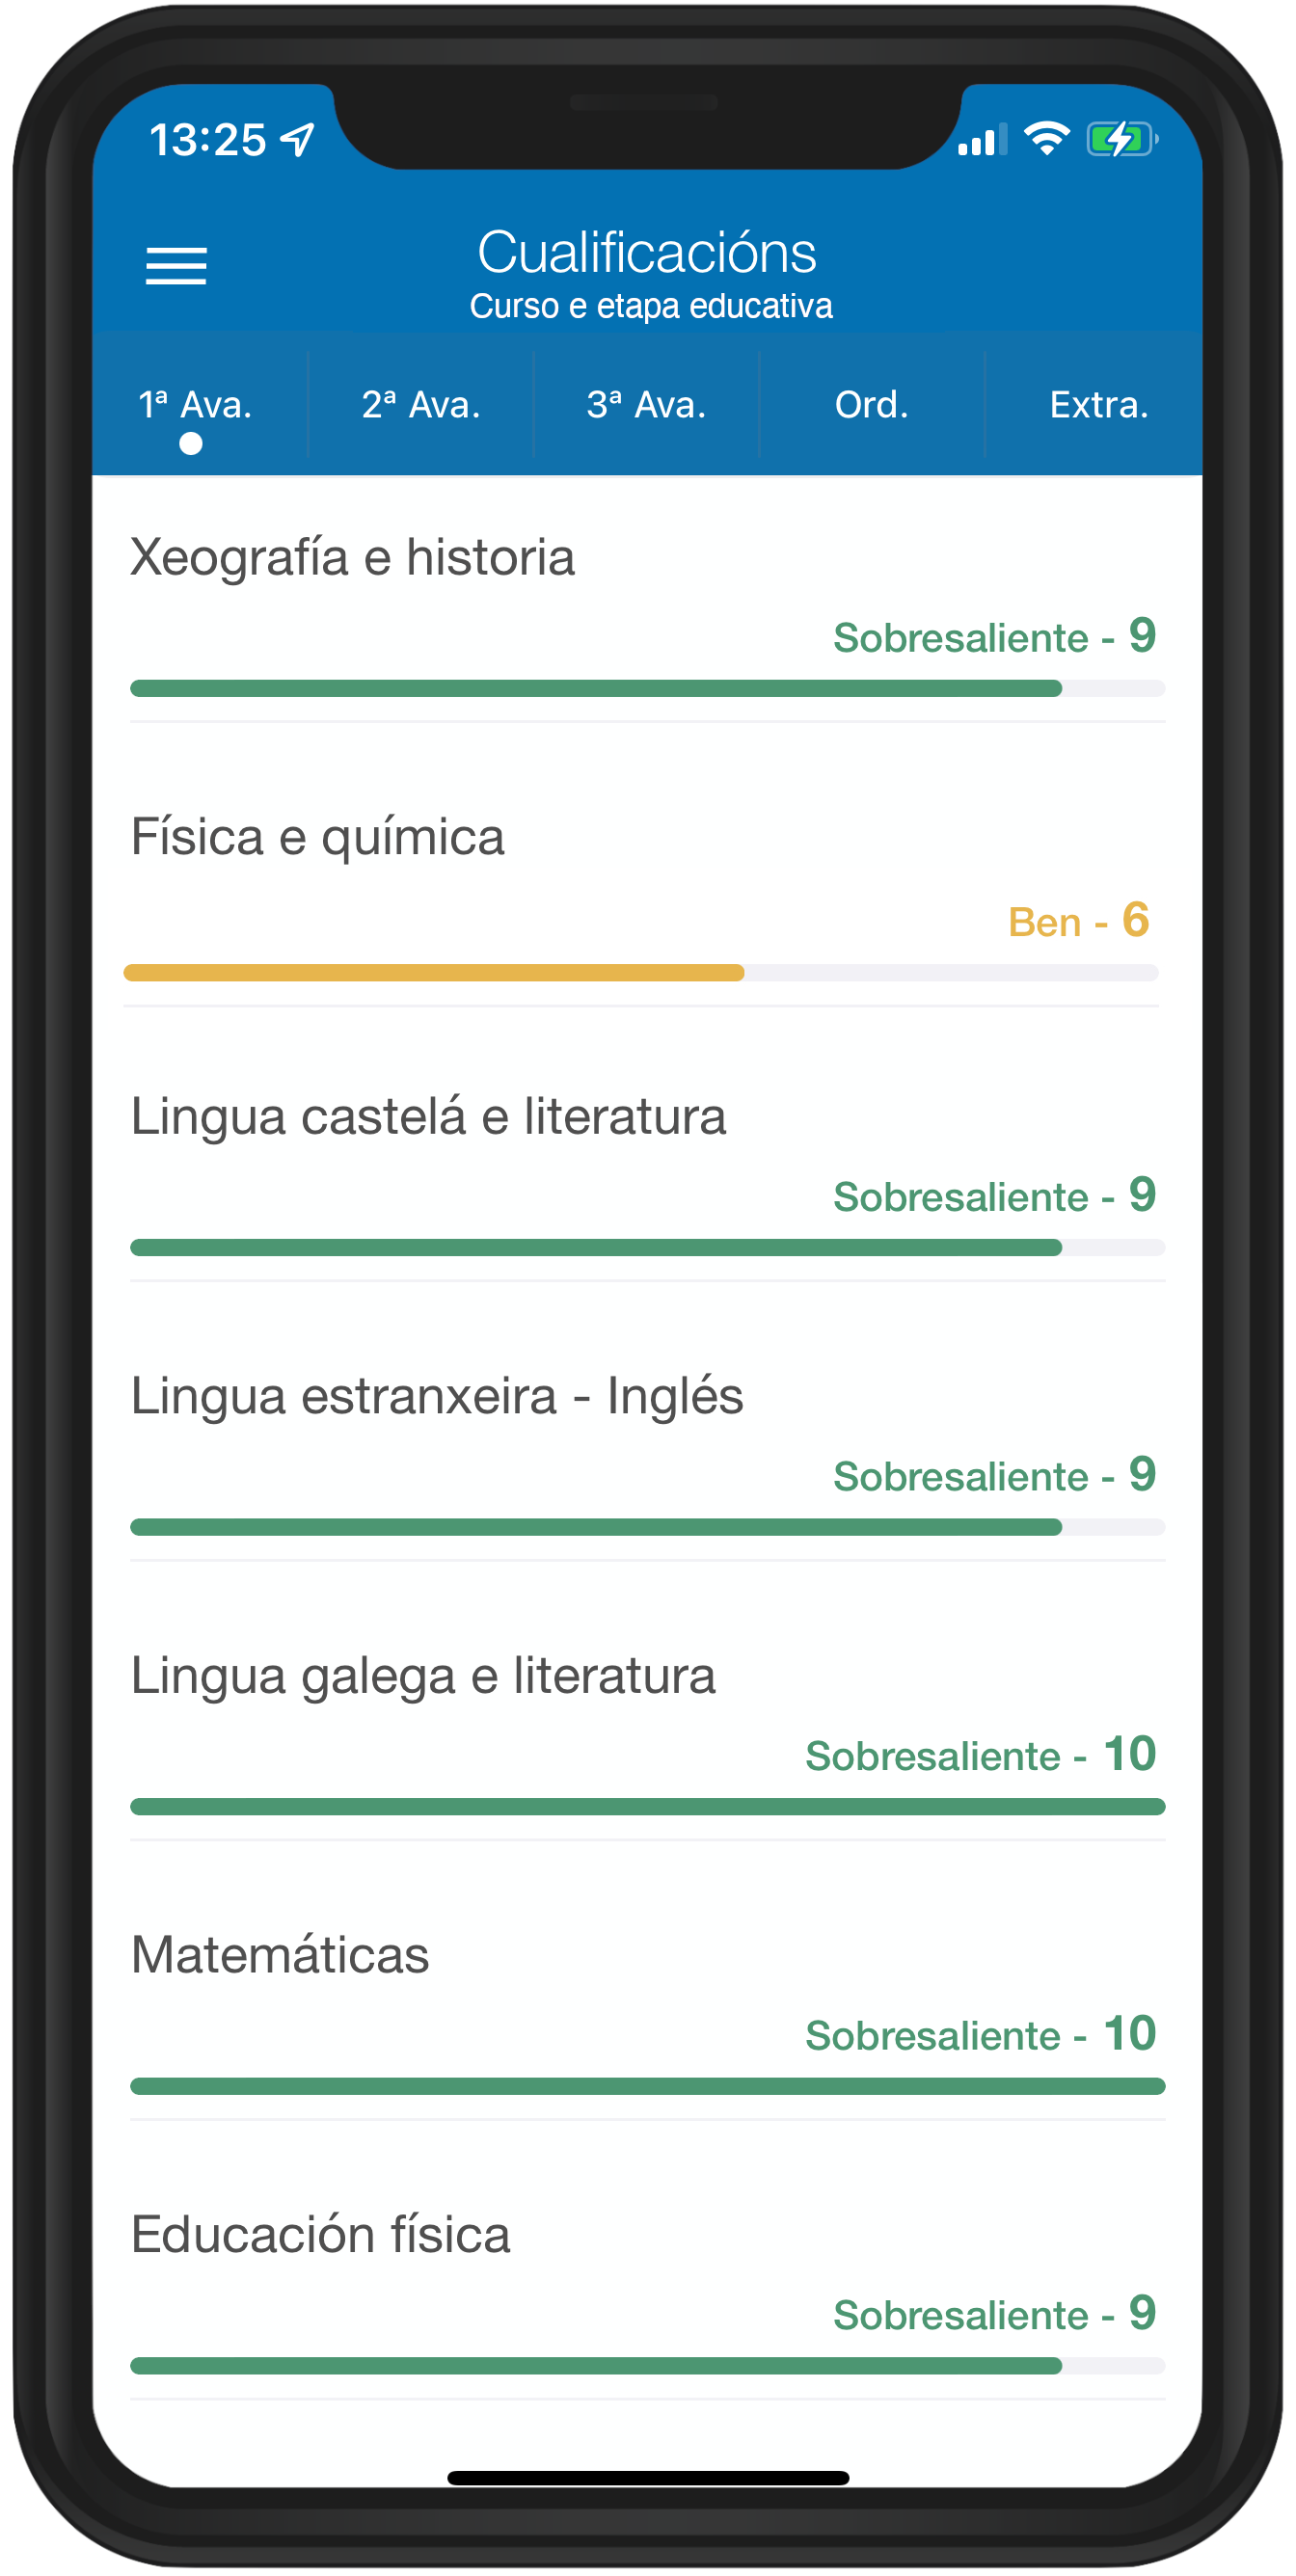 Imaxe das cualificacións na app